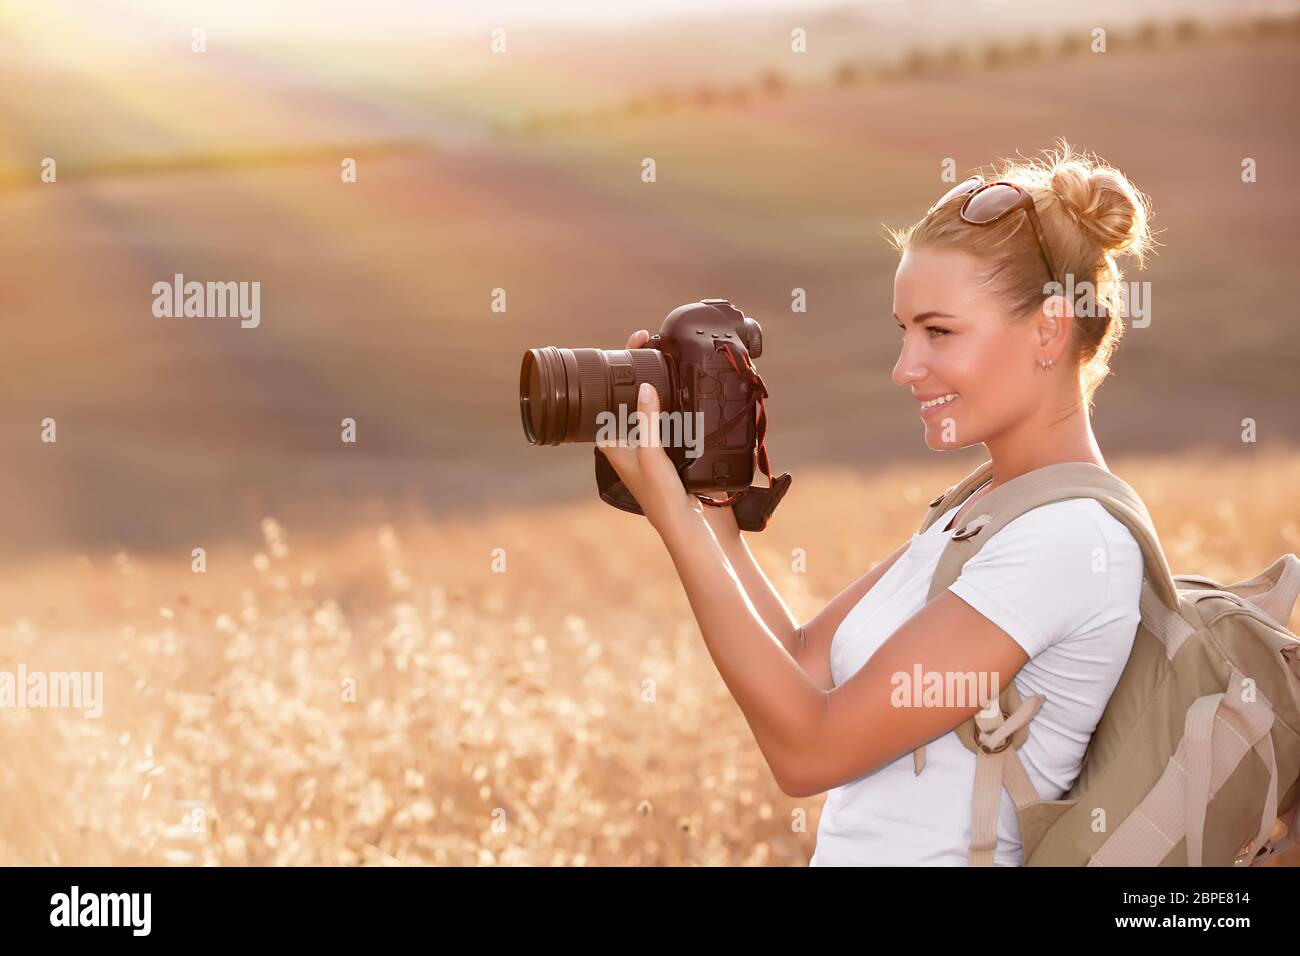 Glückliche Fotograf Herbst Natur genießen, lächelndes Reisenden Mädchen mit Kamera in der Hand fotografieren golden trocken Weizenfeld in Sonnenstrahlen Stockfoto